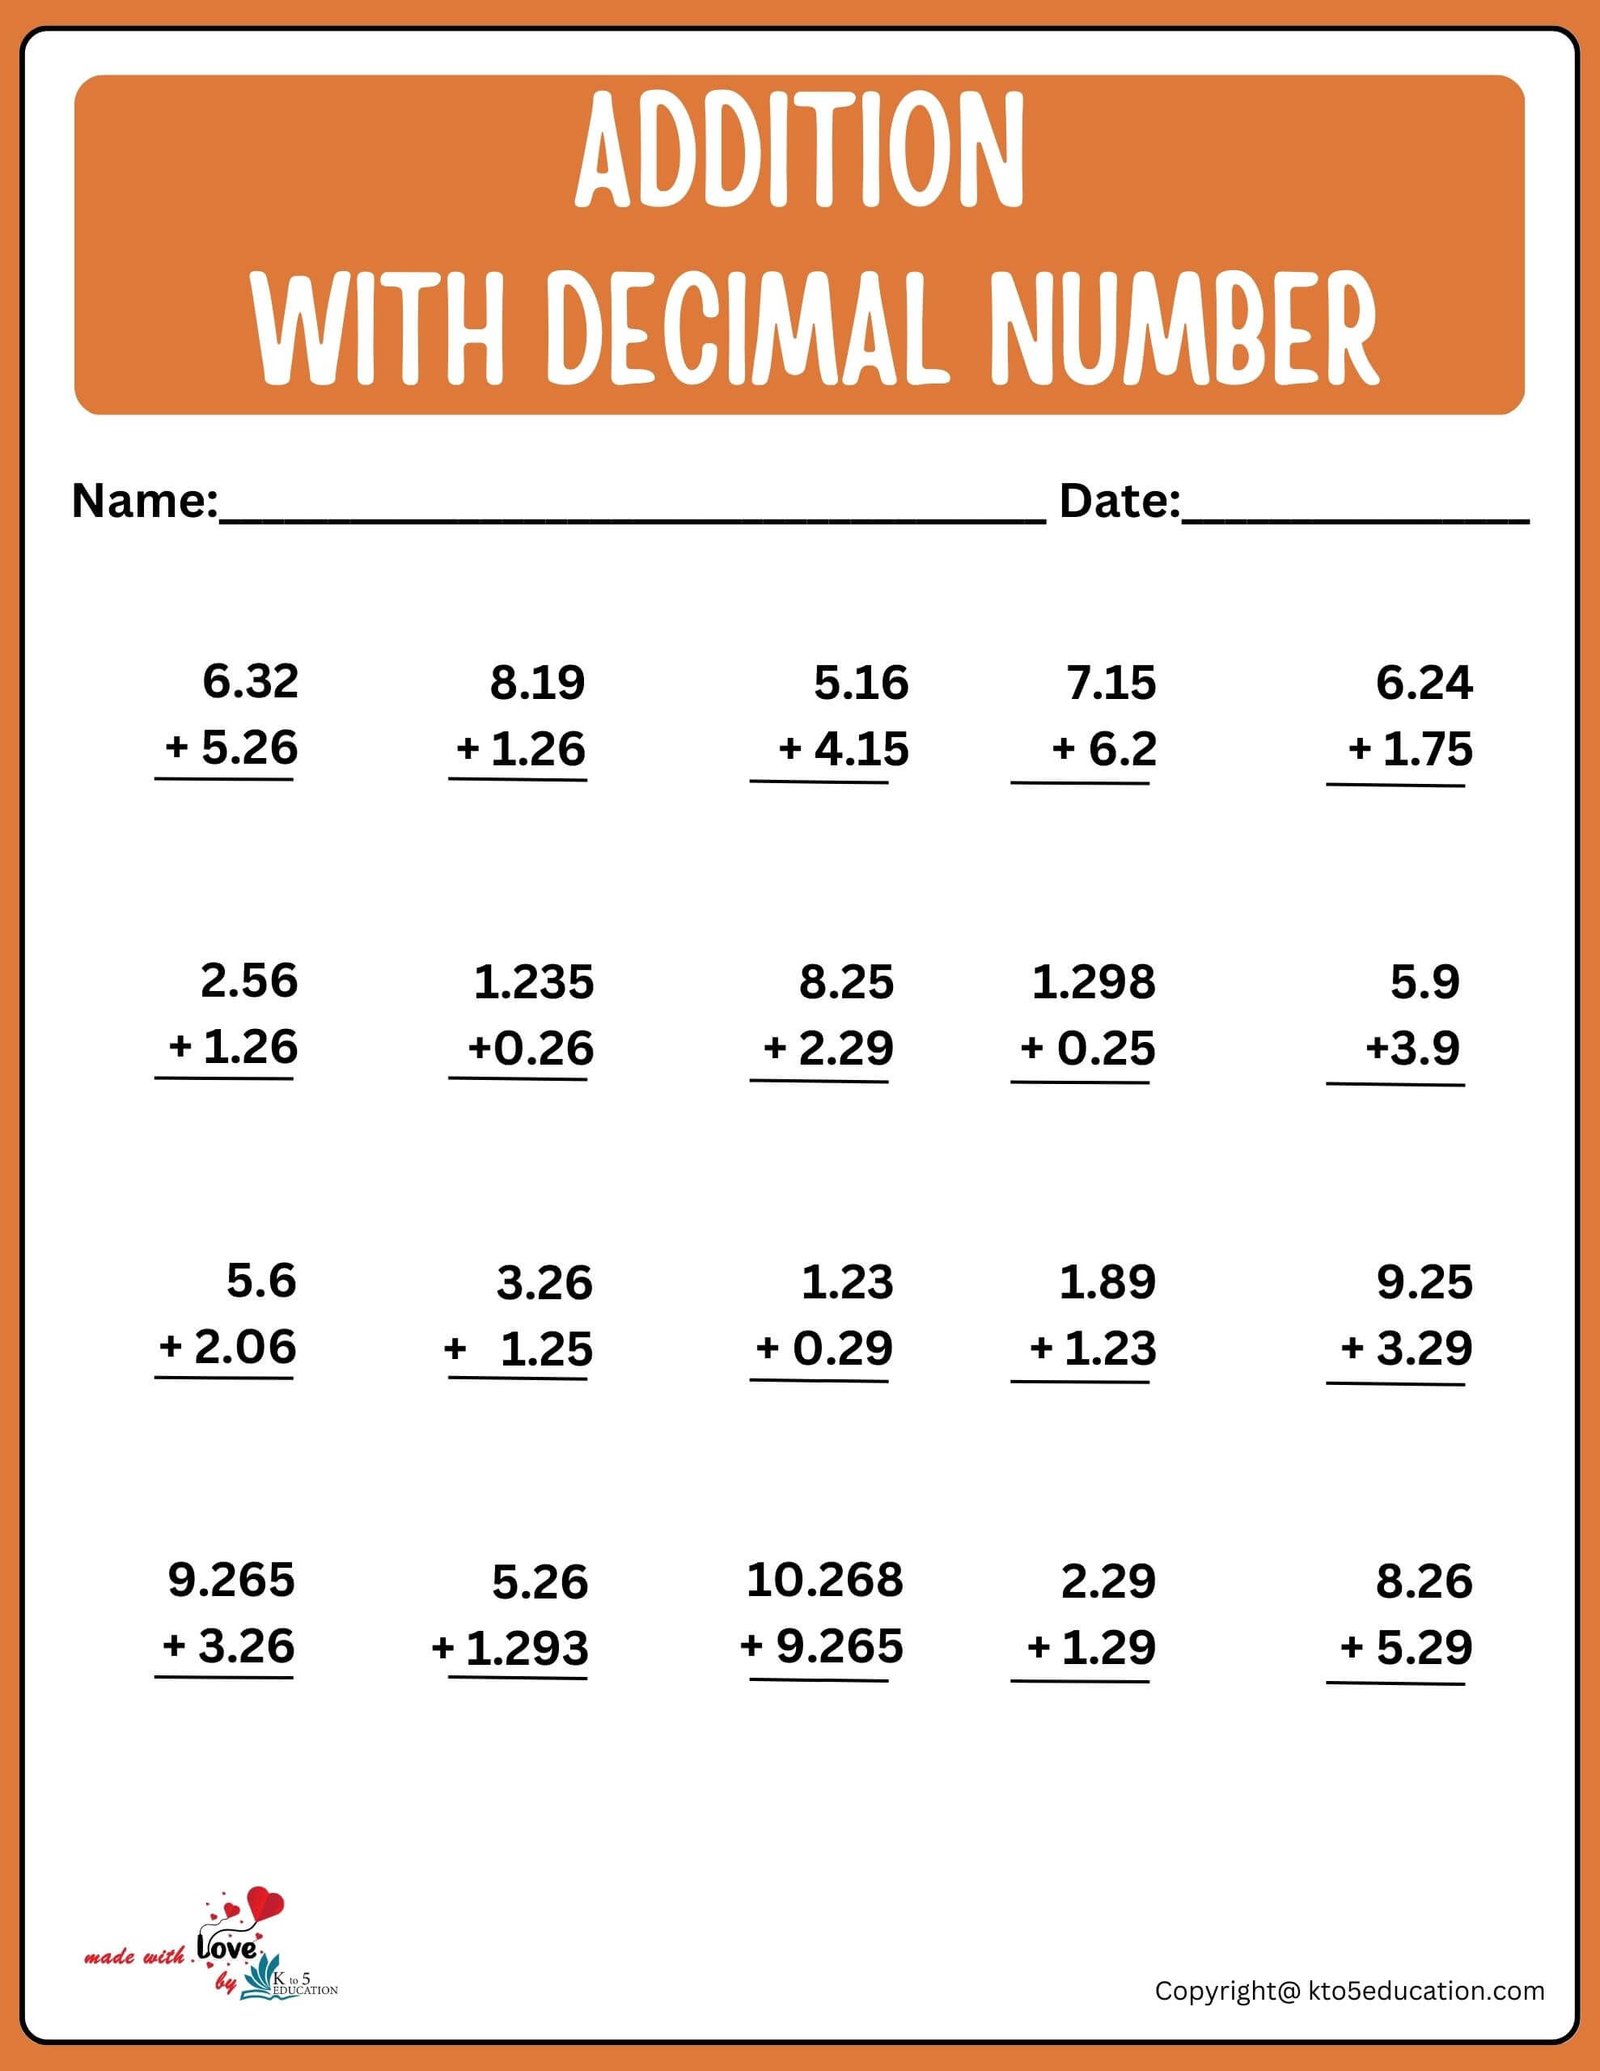 Addition With Decimal Number Worksheet For 3rd Grade